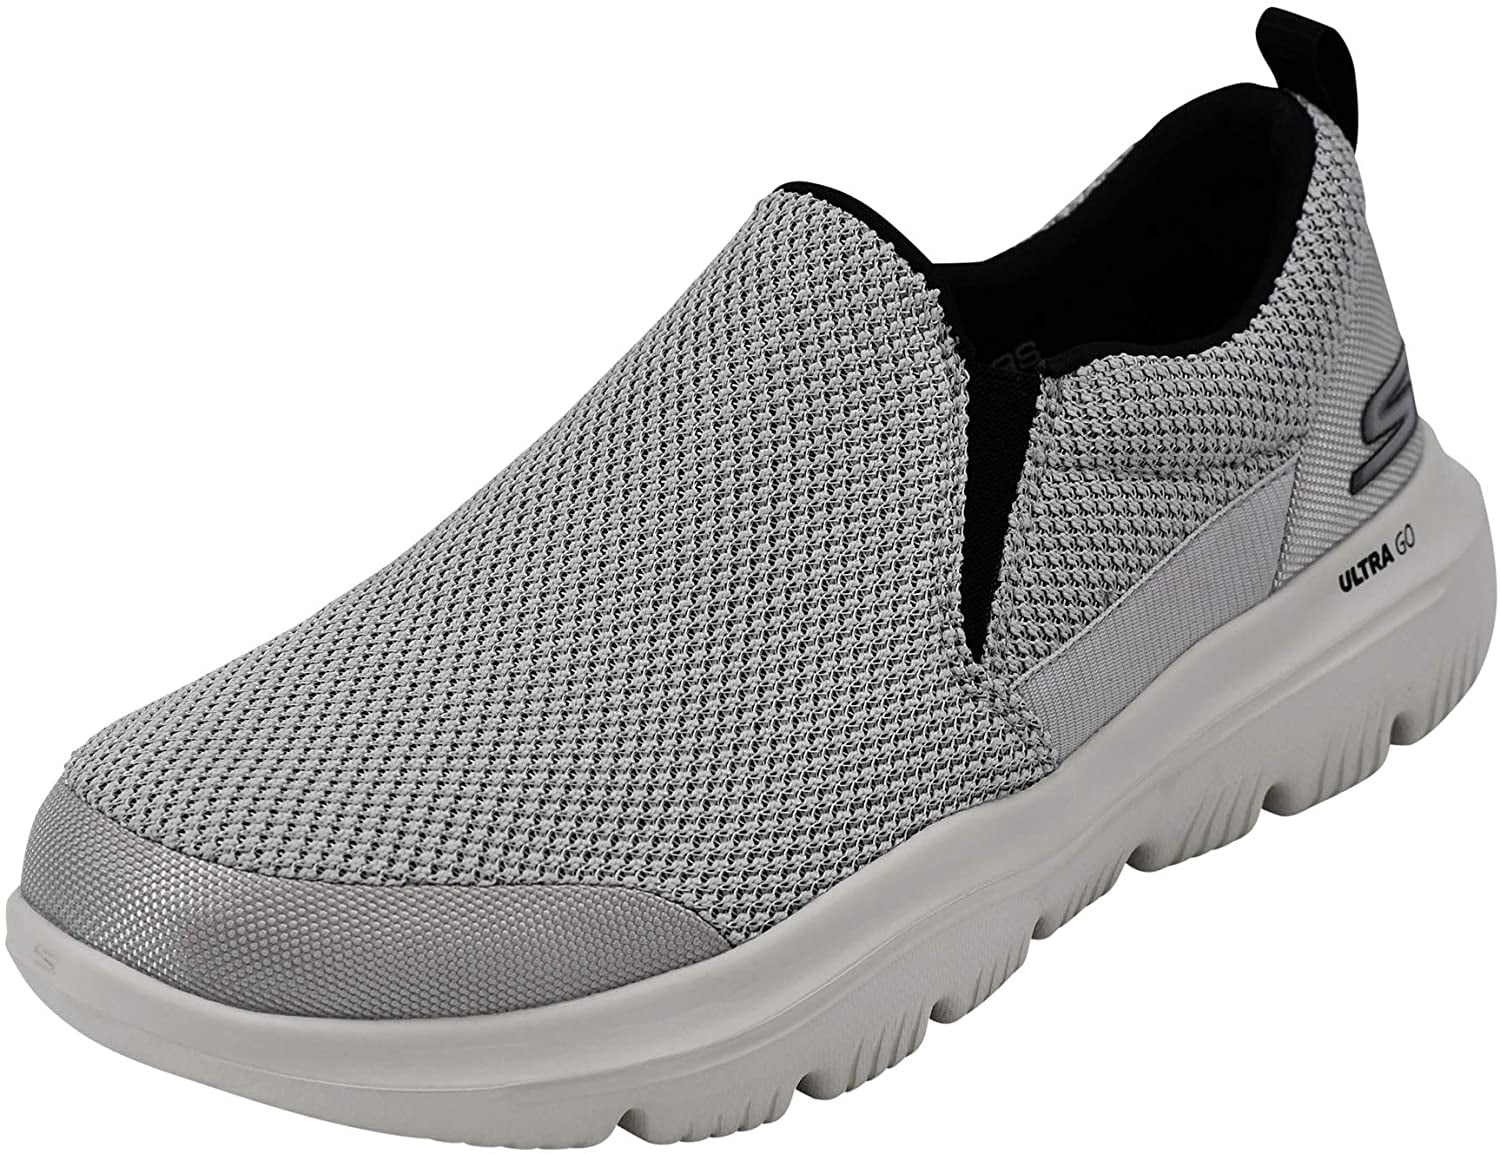 Skechers Men's Go Walk Evolution Ultra-Impeccable Sneaker, Light